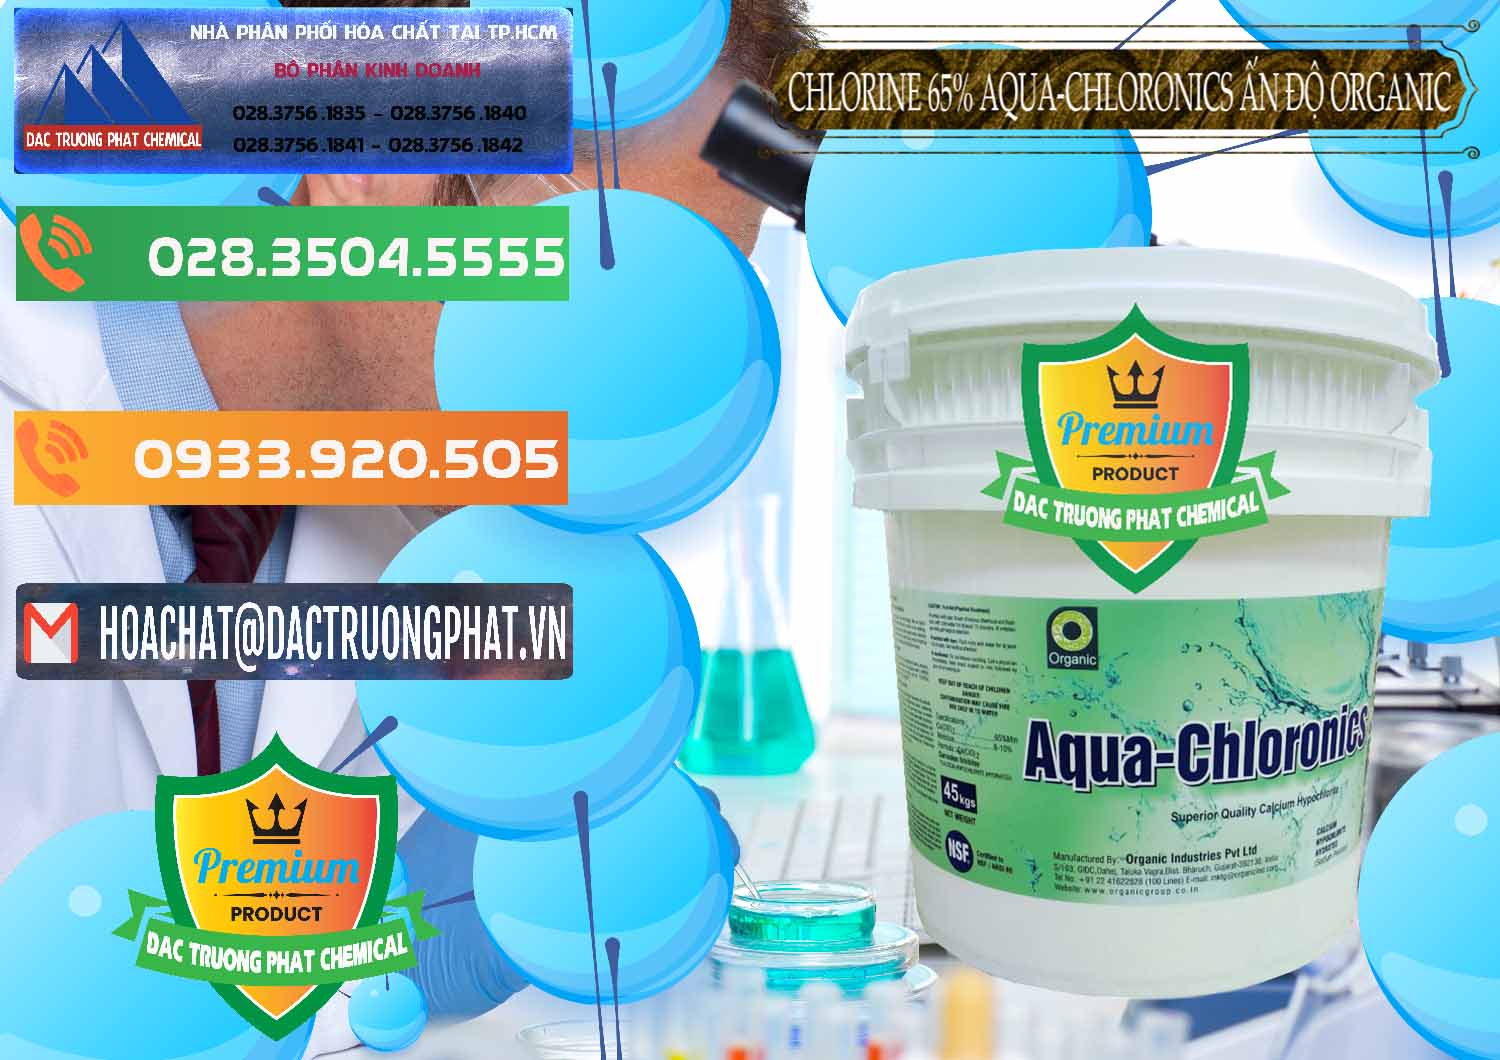 Công ty chuyên kinh doanh & bán Chlorine – Clorin 65% Aqua-Chloronics Ấn Độ Organic India - 0210 - Nhà phân phối ( cung cấp ) hóa chất tại TP.HCM - hoachatxulynuoc.com.vn